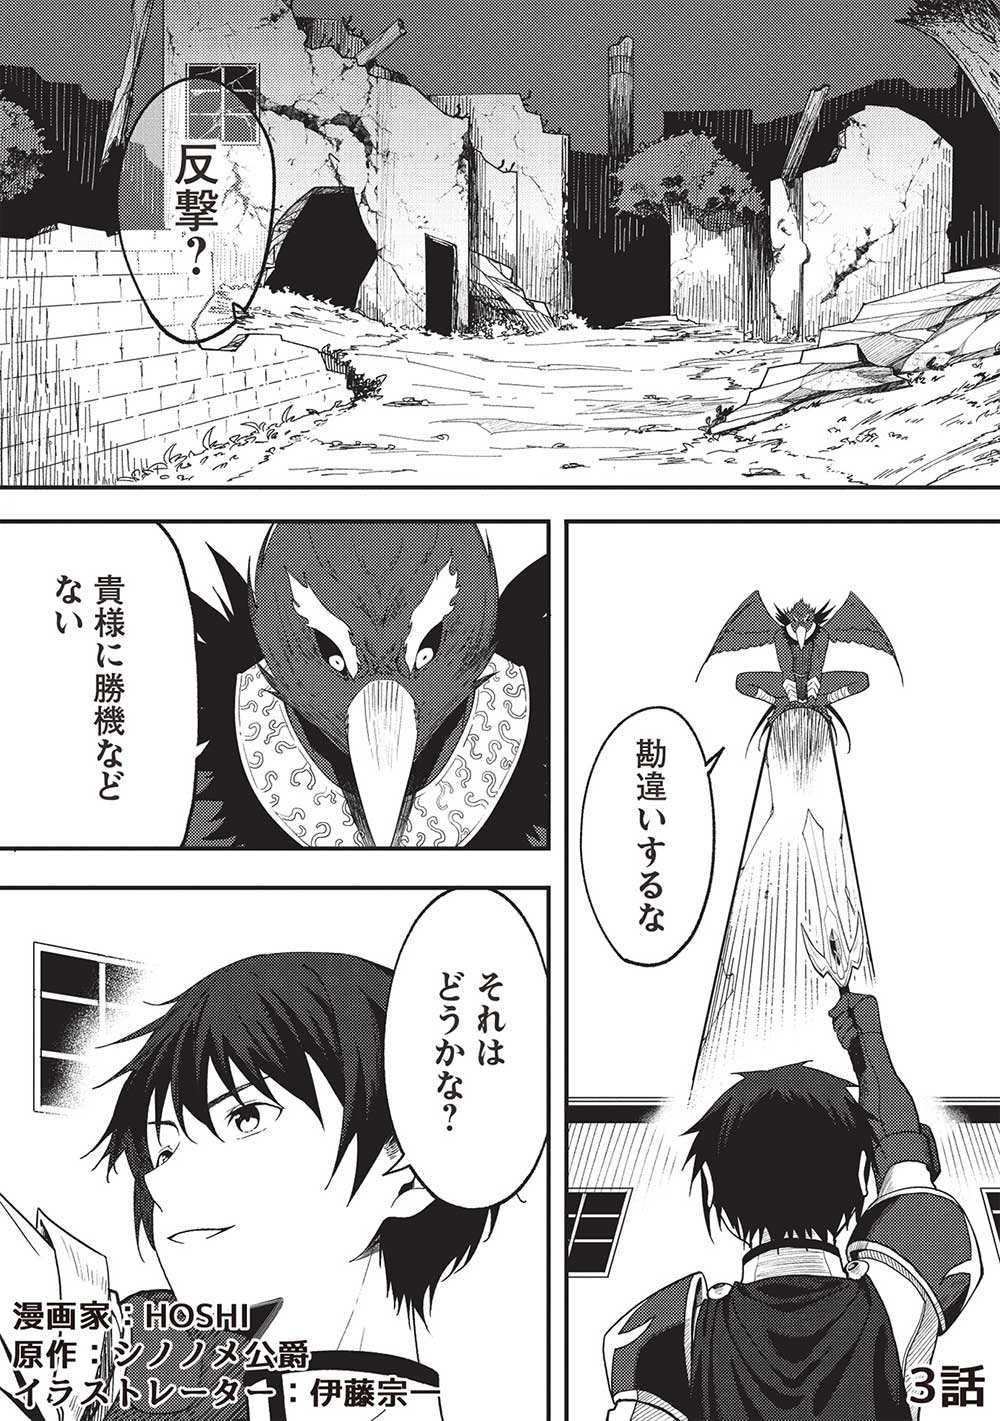 Kono Hi, Itsuwaari no Yuusha de aru Ore wa Shin no Yuusha de aru Kare o Party Kara Tsuihoushita - Chapter 3 - Page 1